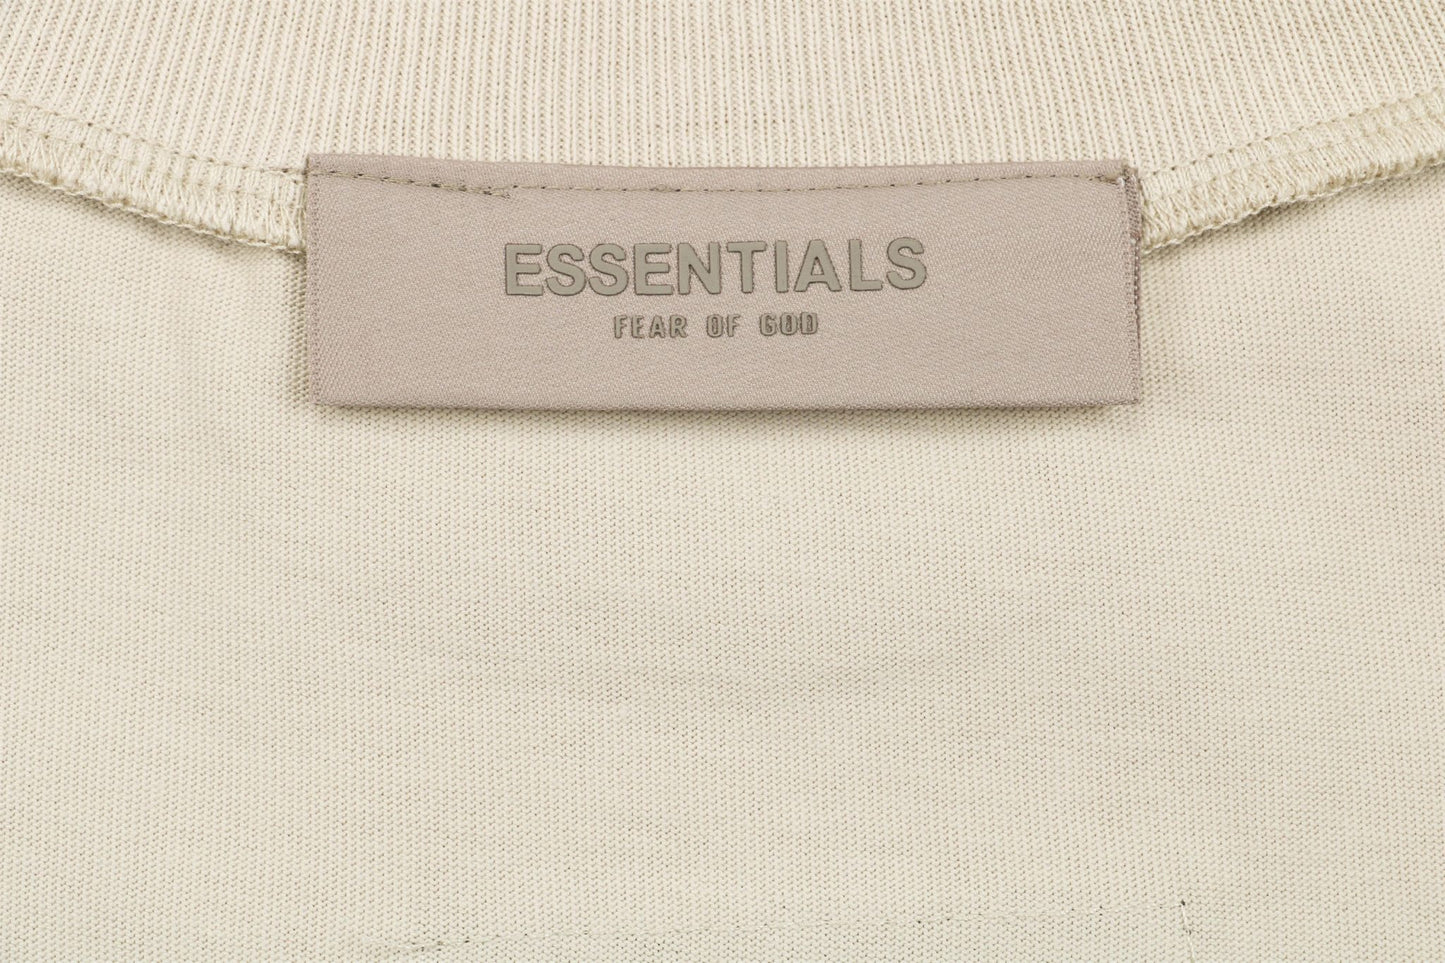 FOG Beige 1977 E55ential5 T-Shirt